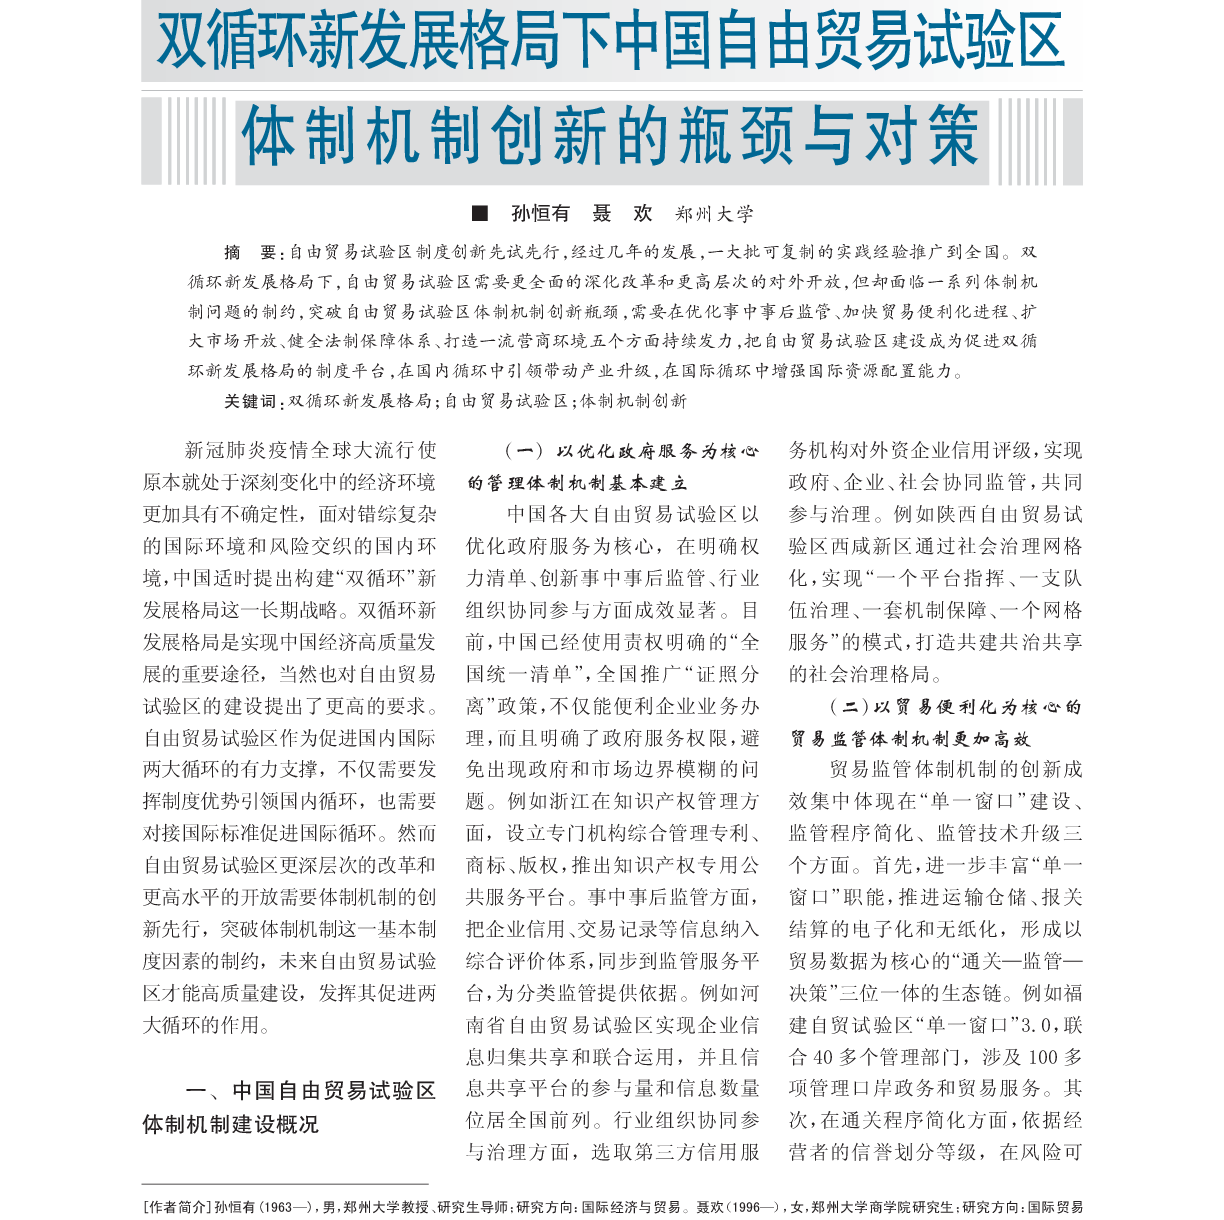 双循环新发展格局下中国自由贸易试验区体制机制创新的瓶颈与对策